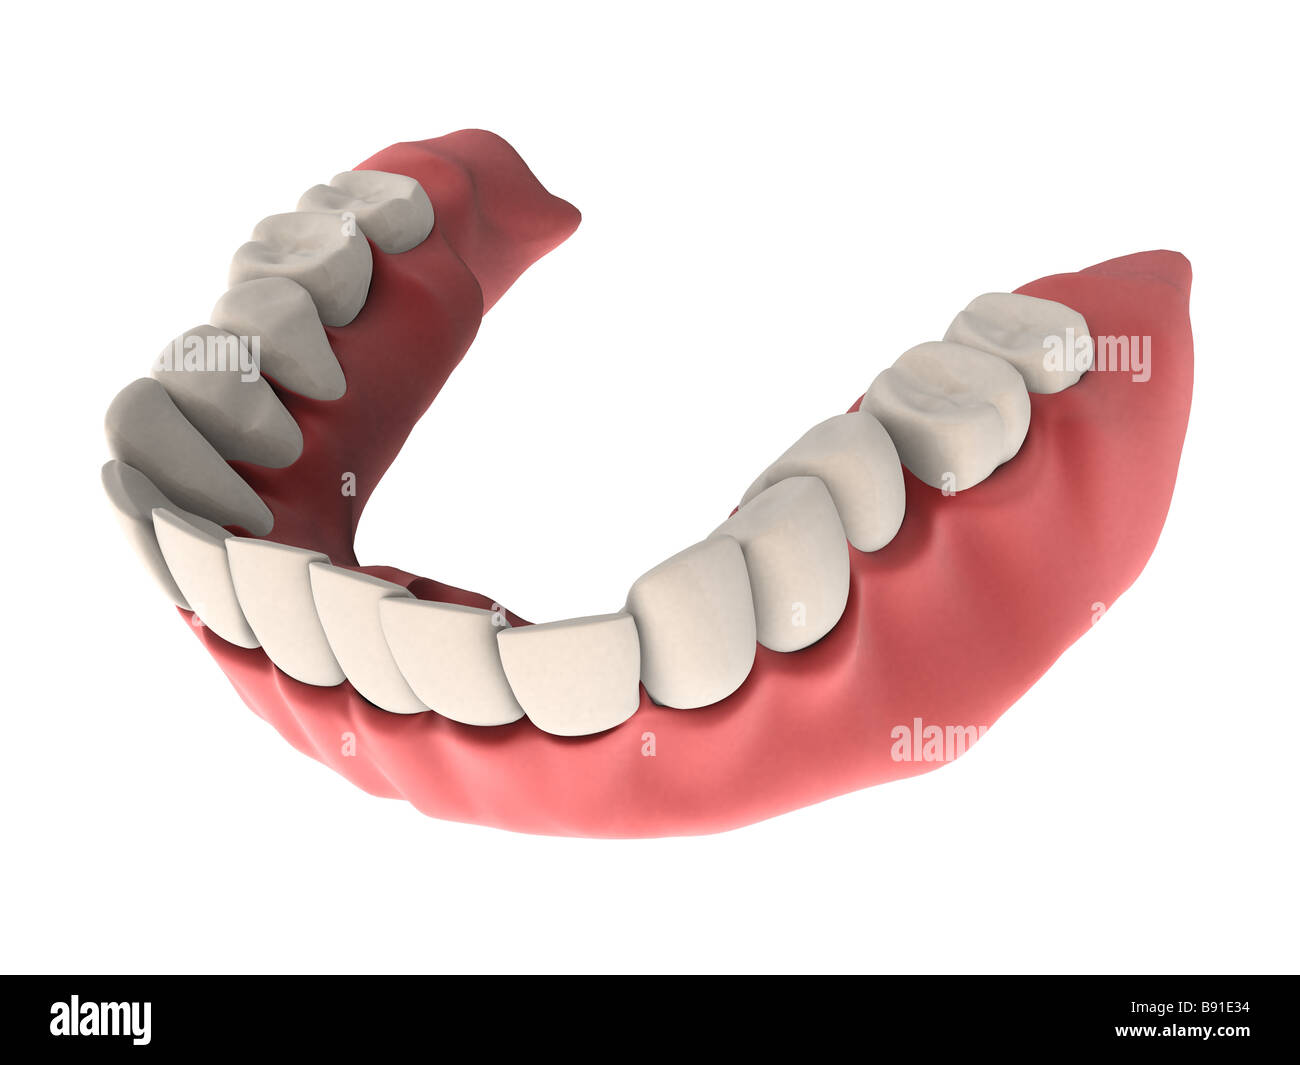 human teeth Stock Photo